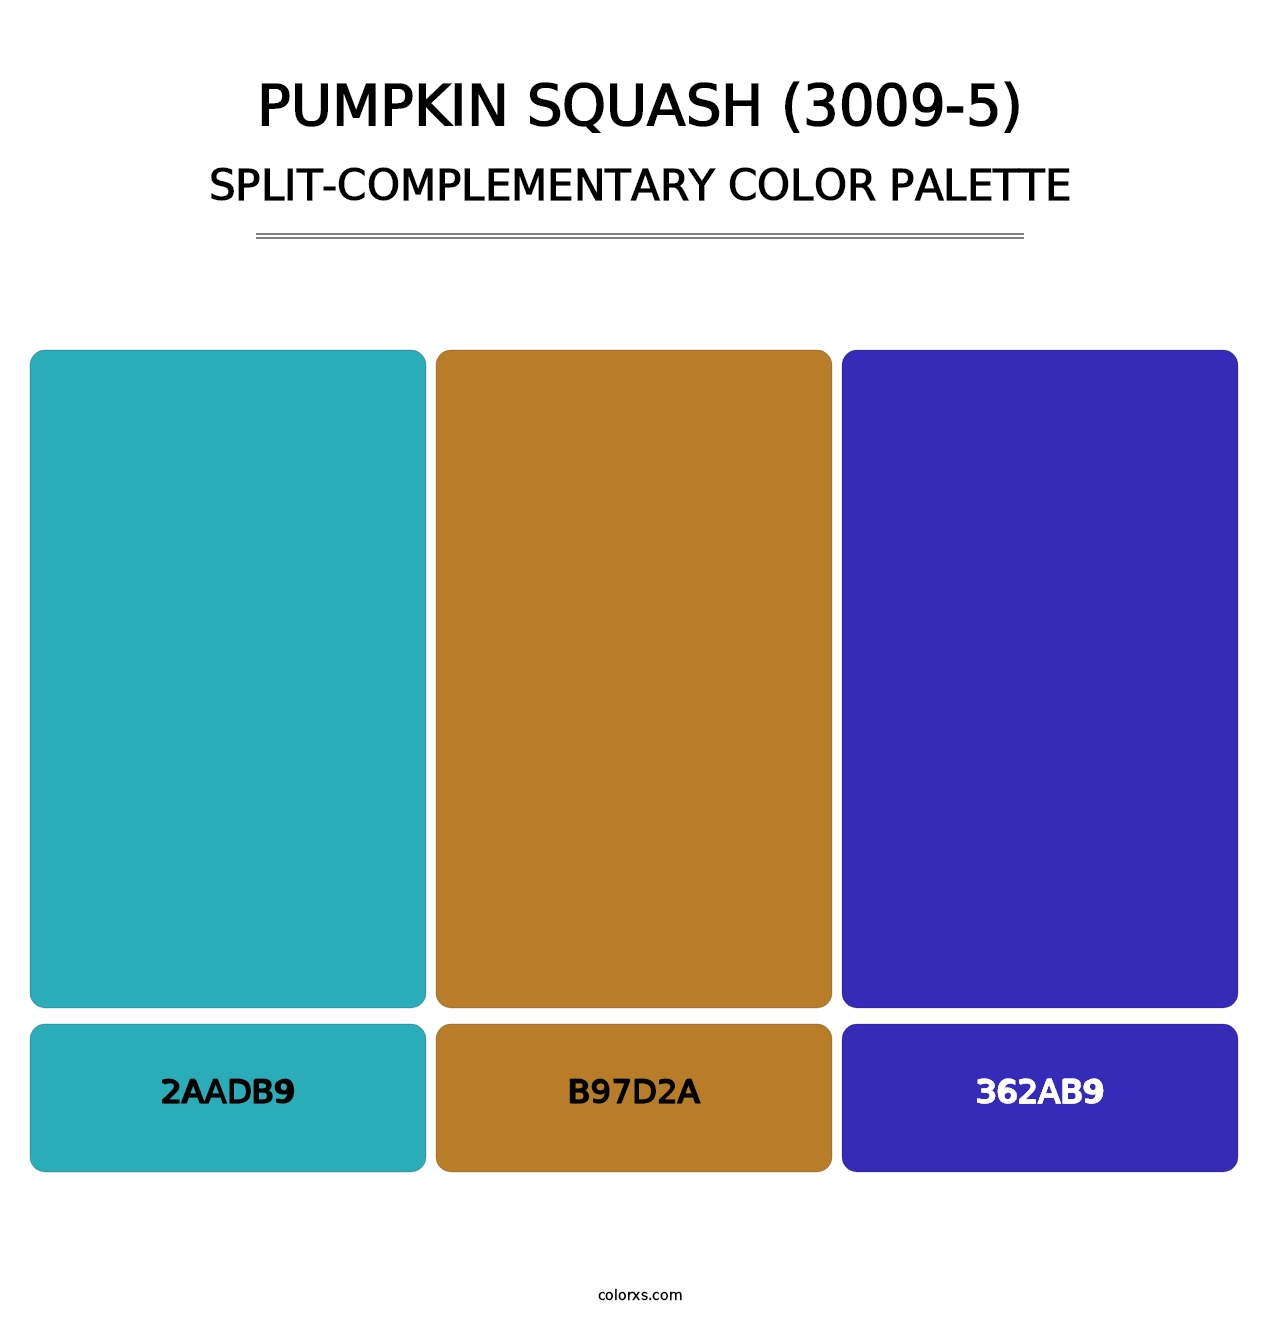 Pumpkin Squash (3009-5) - Split-Complementary Color Palette